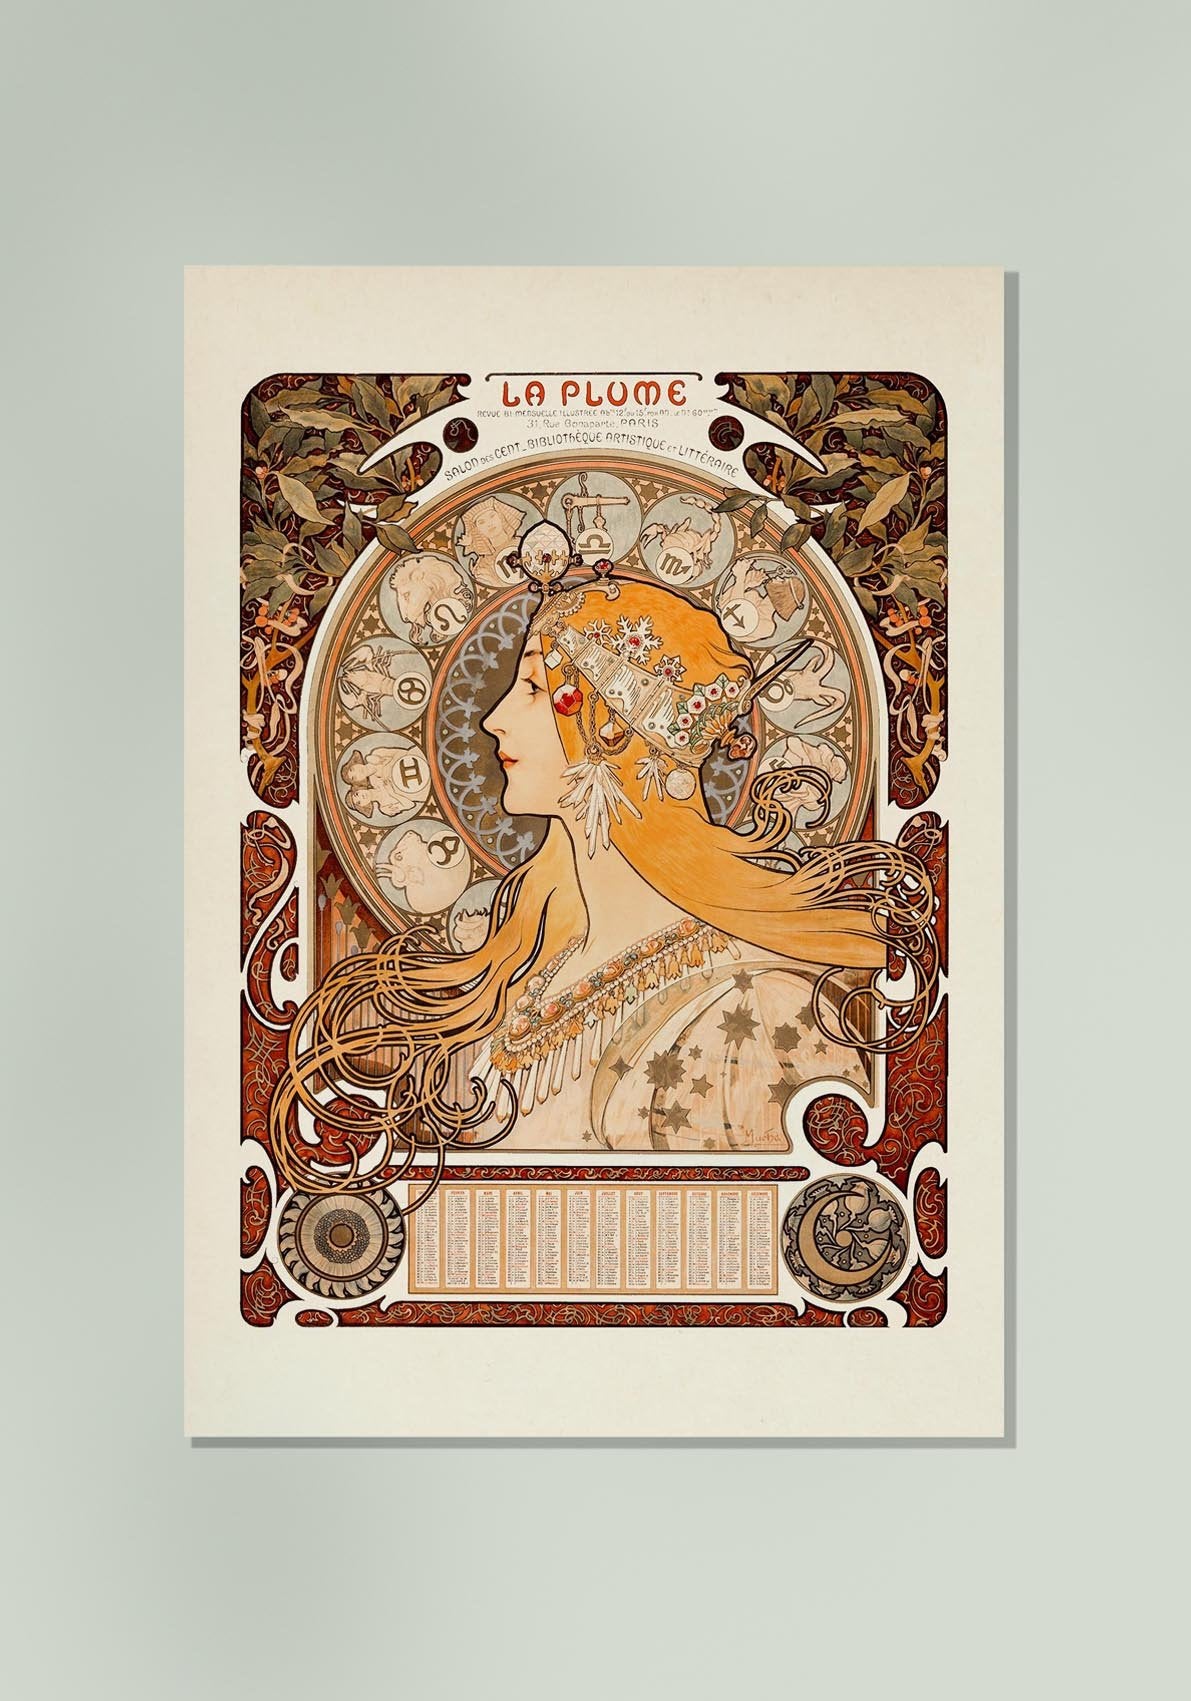 La Plume by Alphonse Mucha